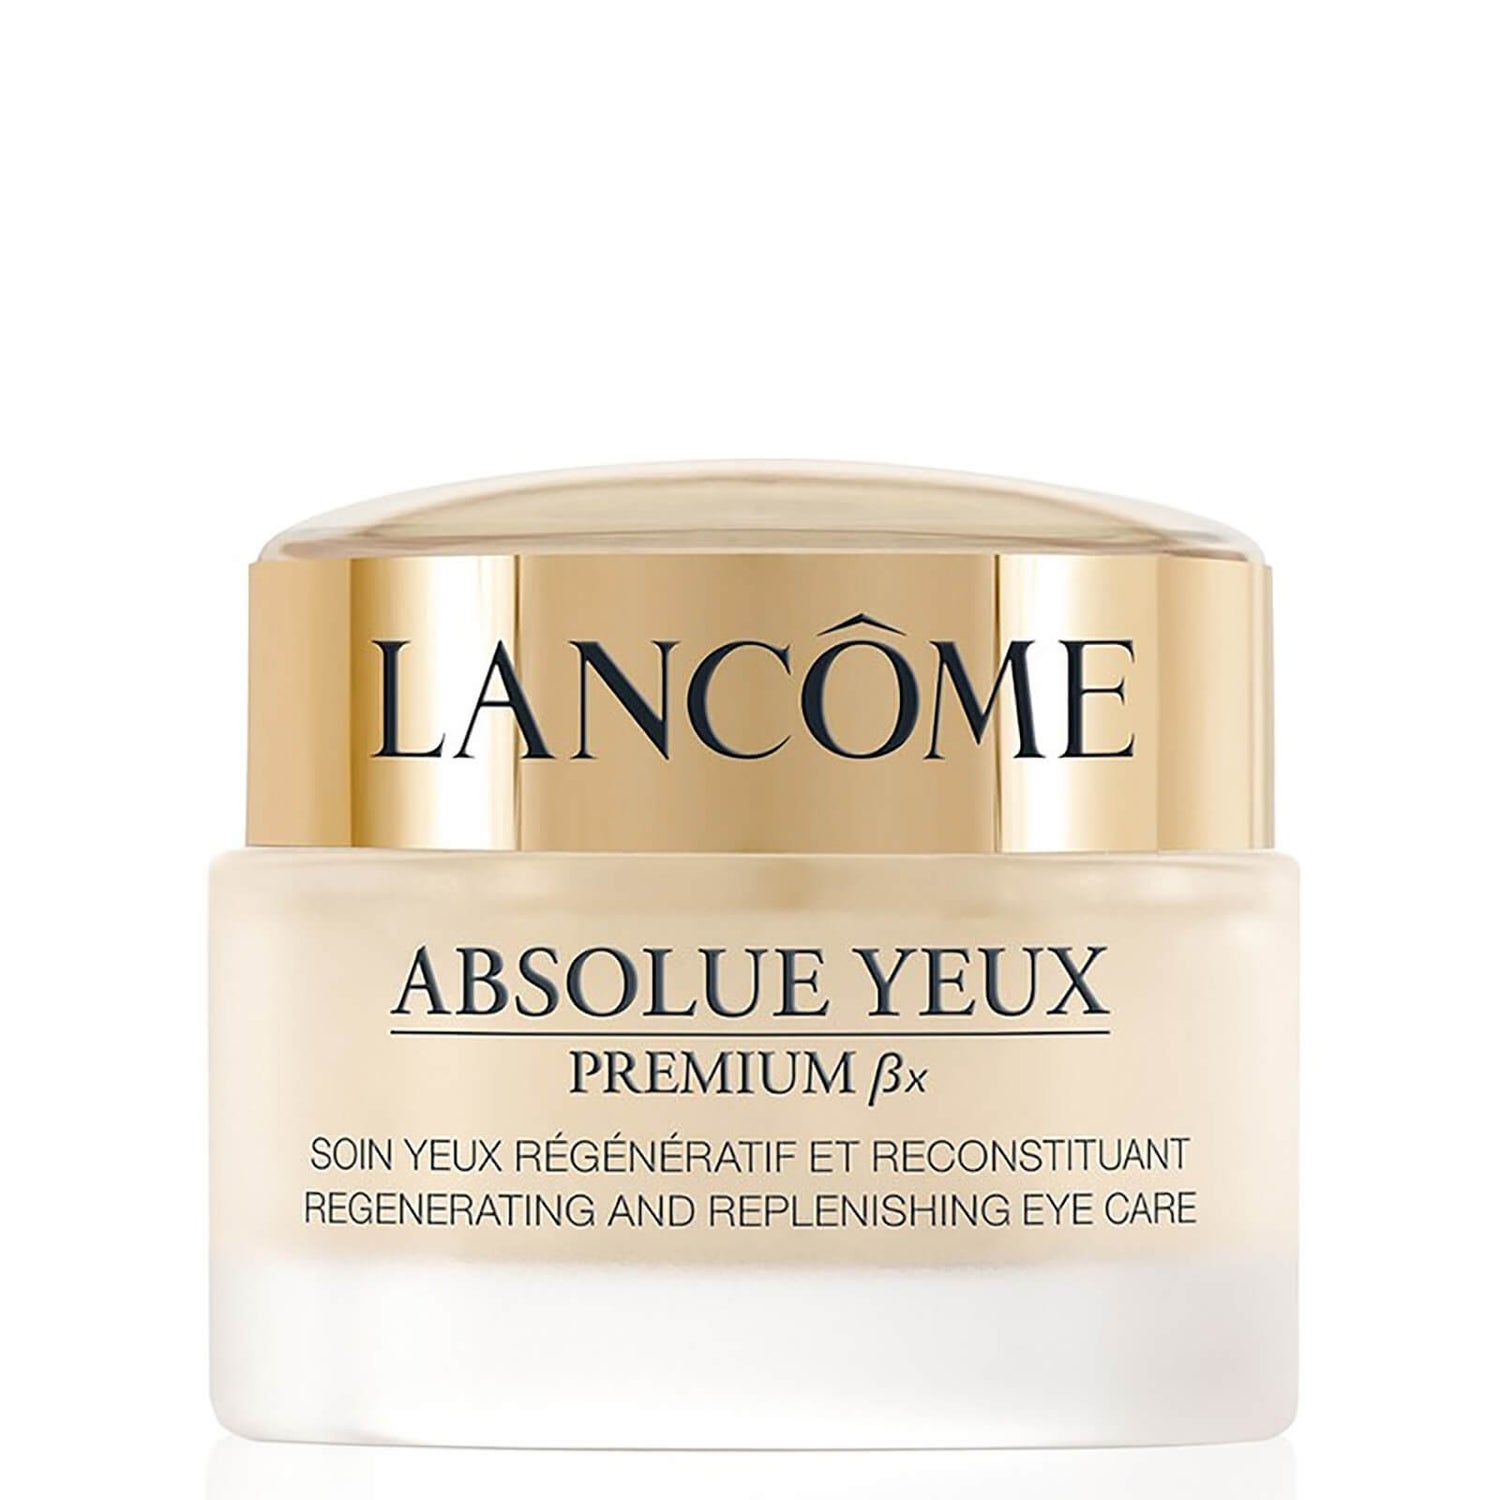 Lancôme Absolue Yeux Premium BX crème contour des yeux (20ml)